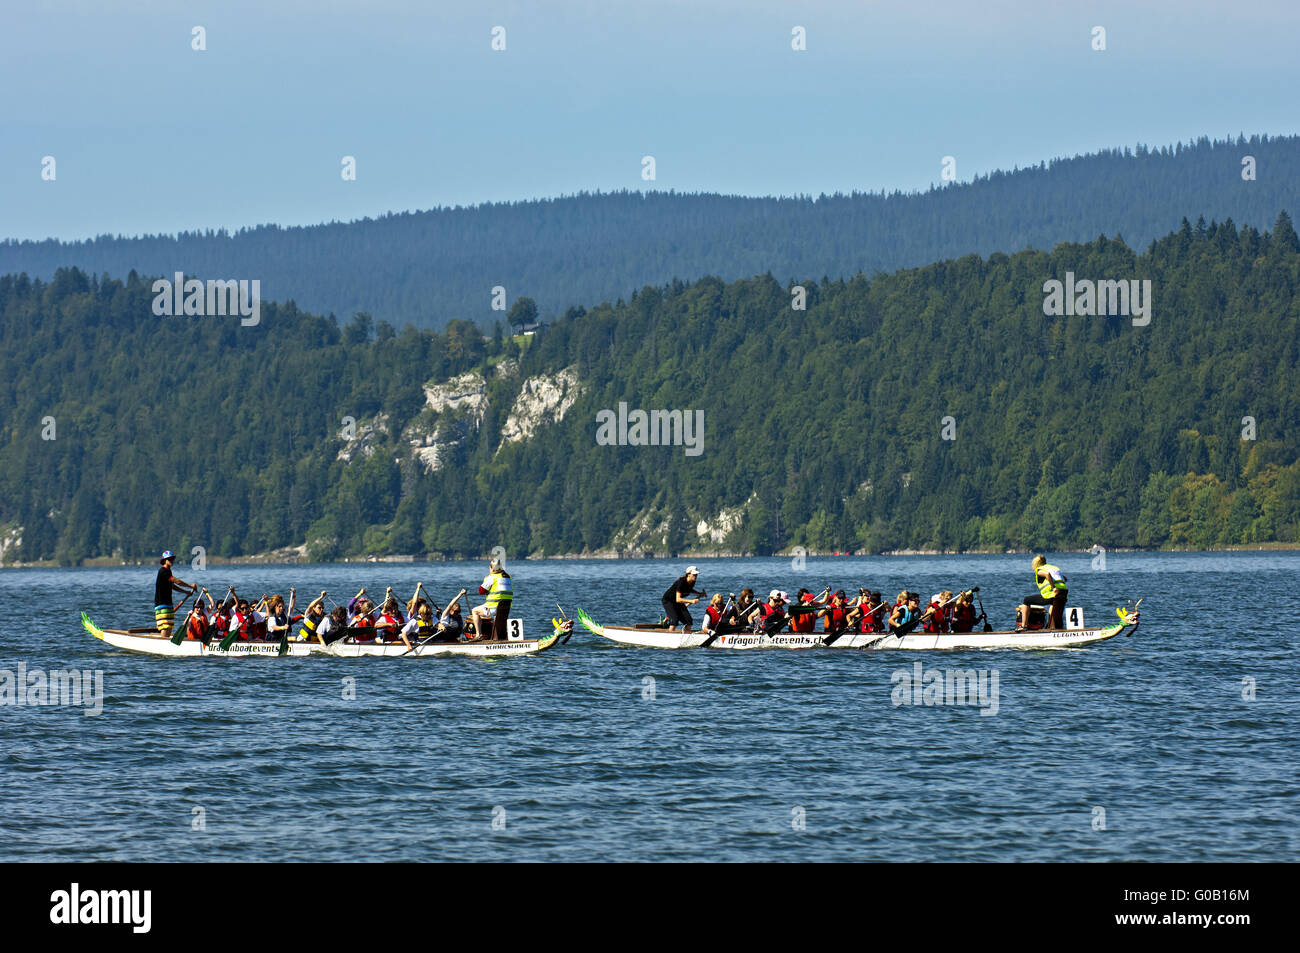 Dragon boat race, Lac de Joux, Switzerland Stock Photo